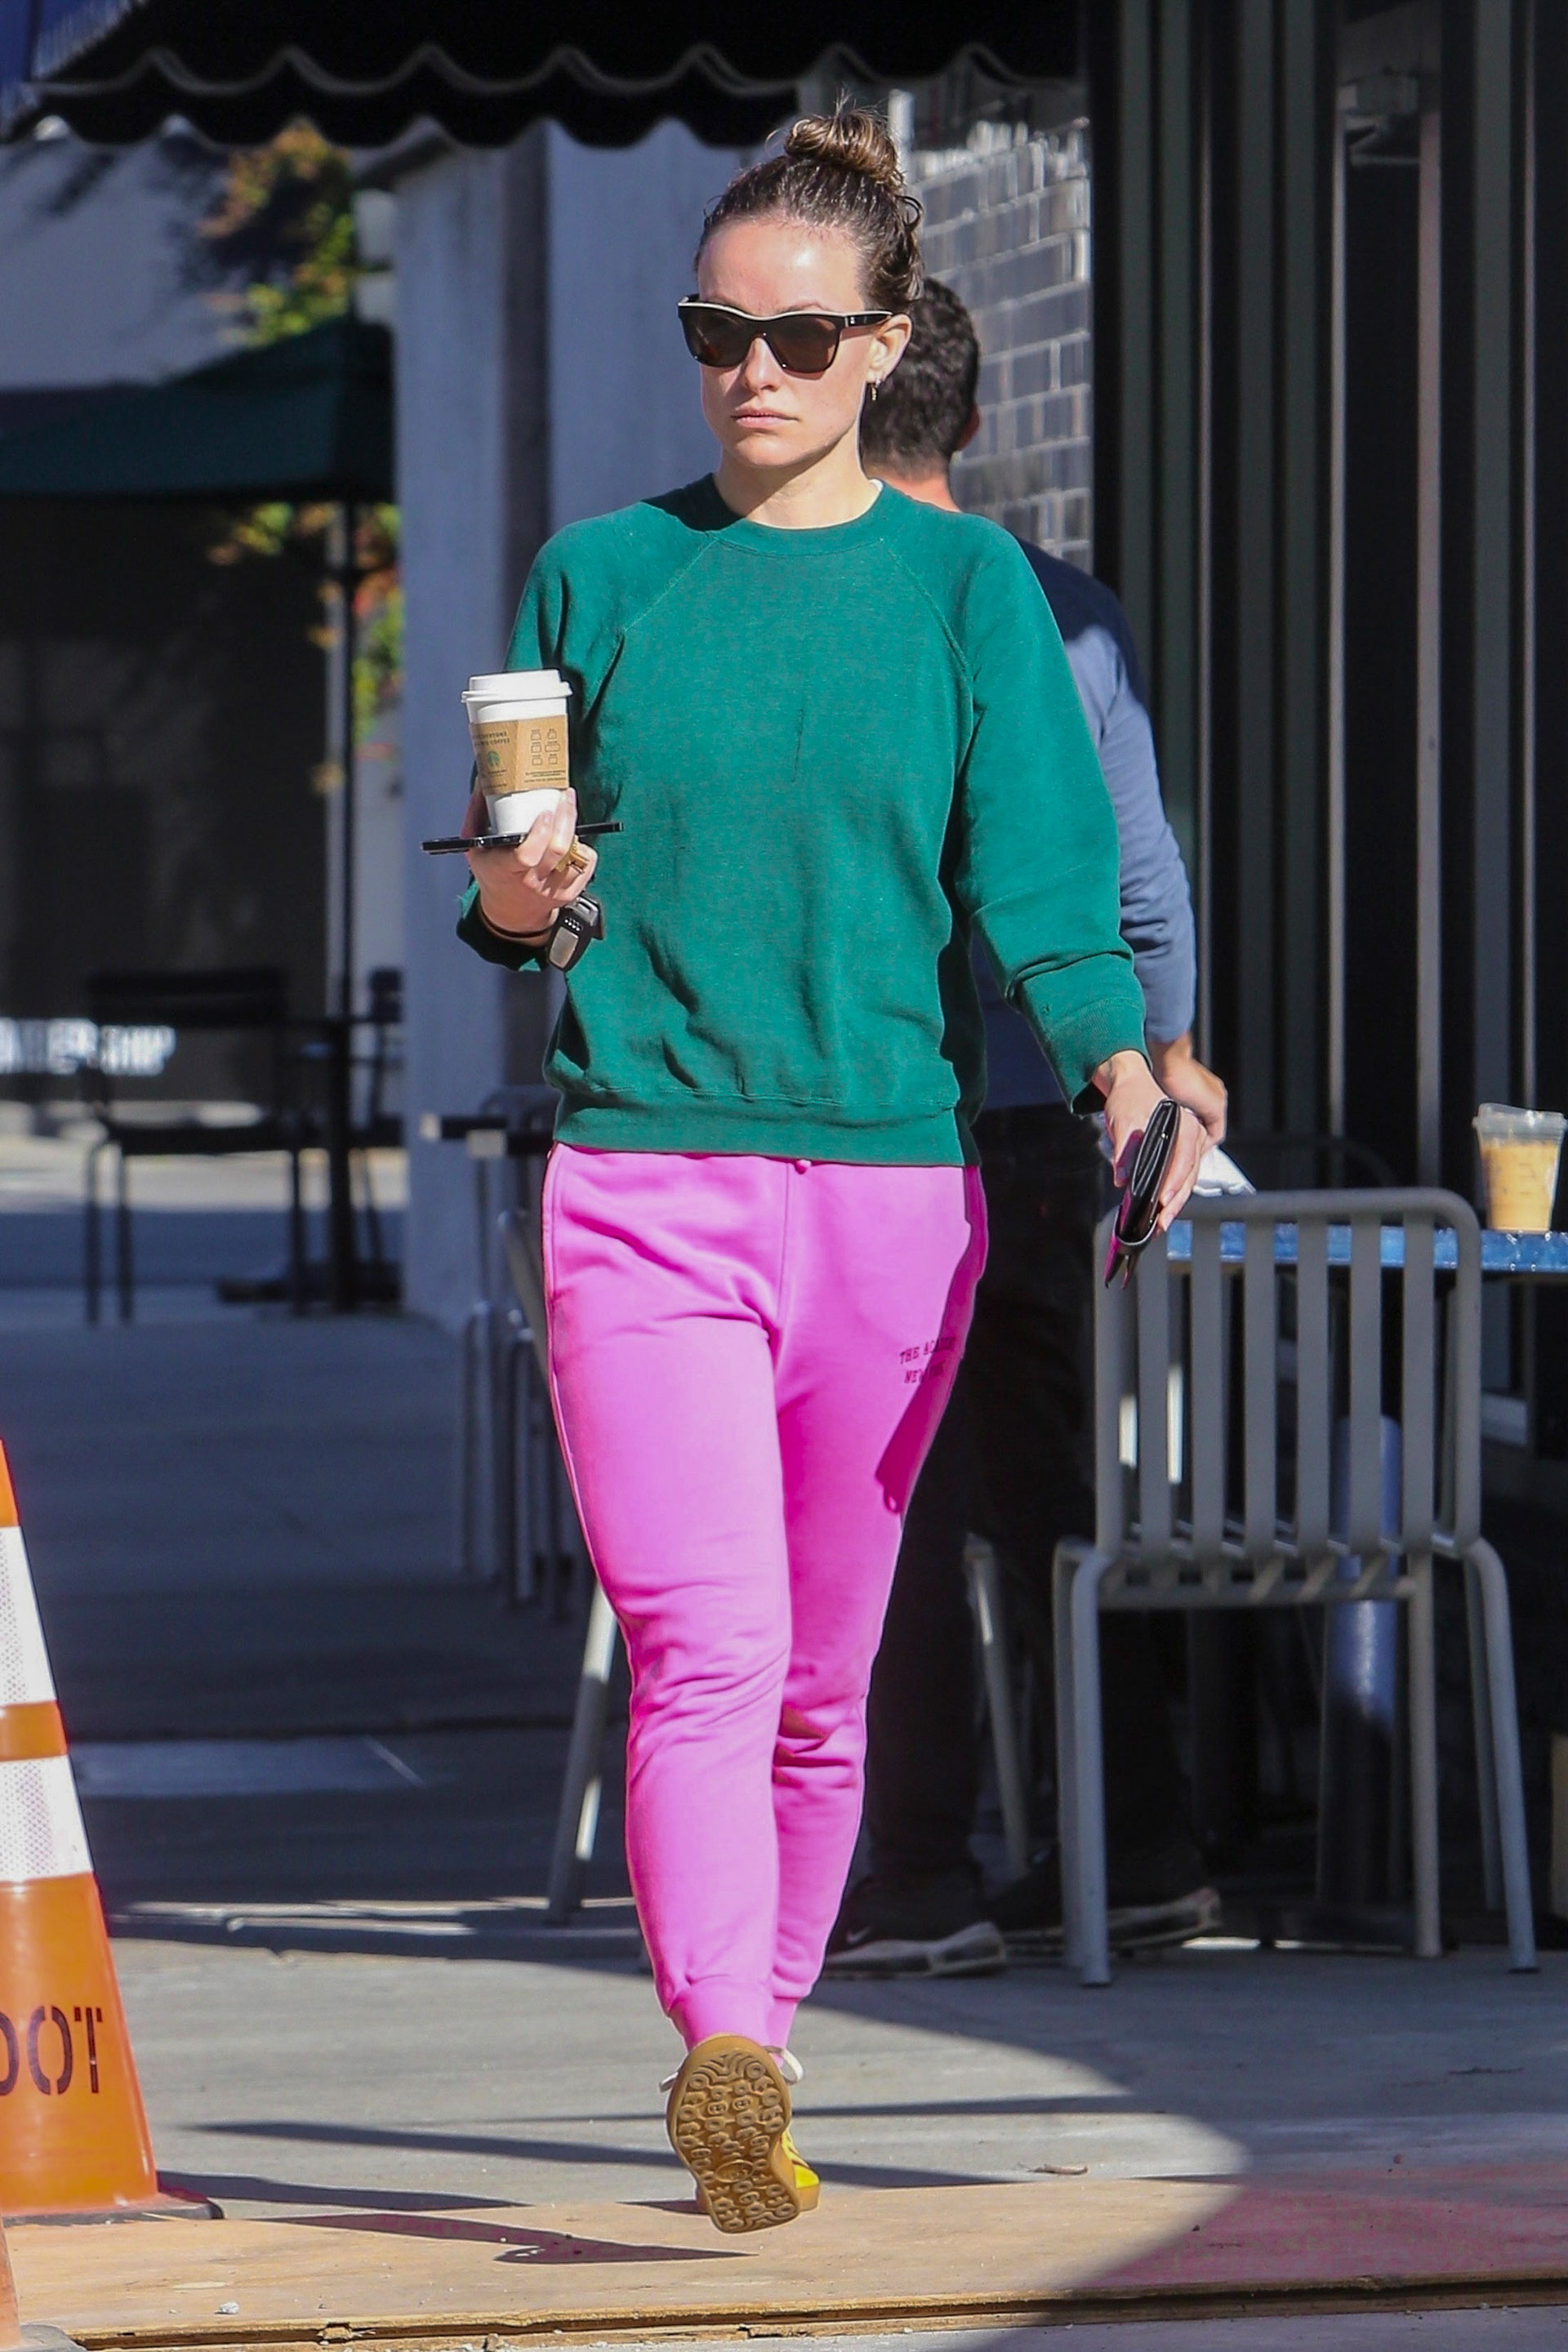 Olivia Wilde dio un paseo por un reconocido centro comercial de Los Ángeles y marcó tendencia con su colorido look: pantalón rosa, buzo verde y zapatillas amarillas. Fue fotografiada cuando salía de una tienda de café